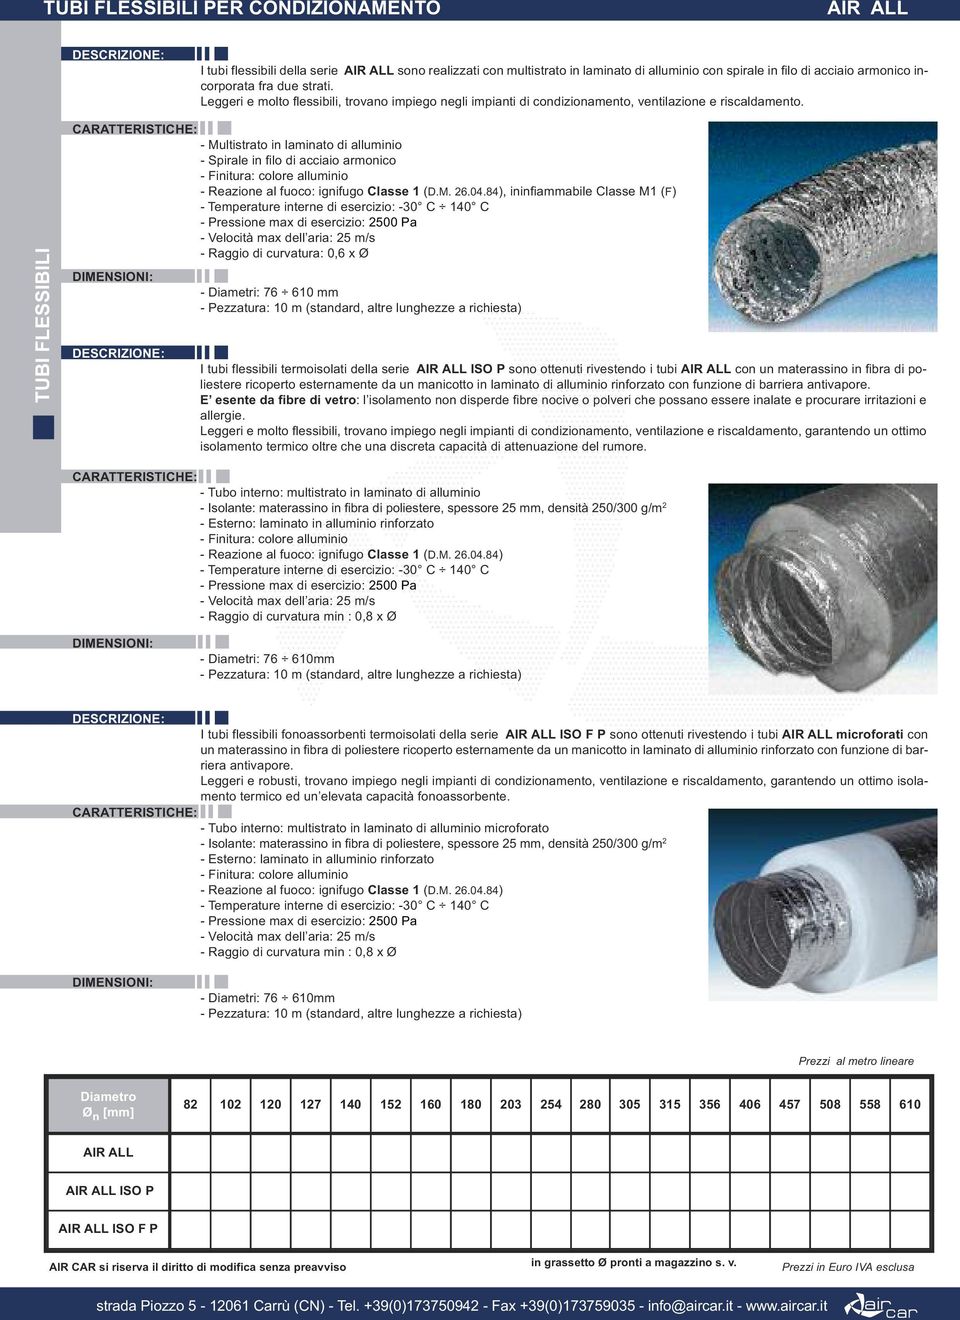 TUBI FLESSIBILI - Multistrato in laminato di alluminio - Spirale in filo di acciaio armonico - Reazione al fuoco: ignifugo Classe 1 (D.M. 26.04.